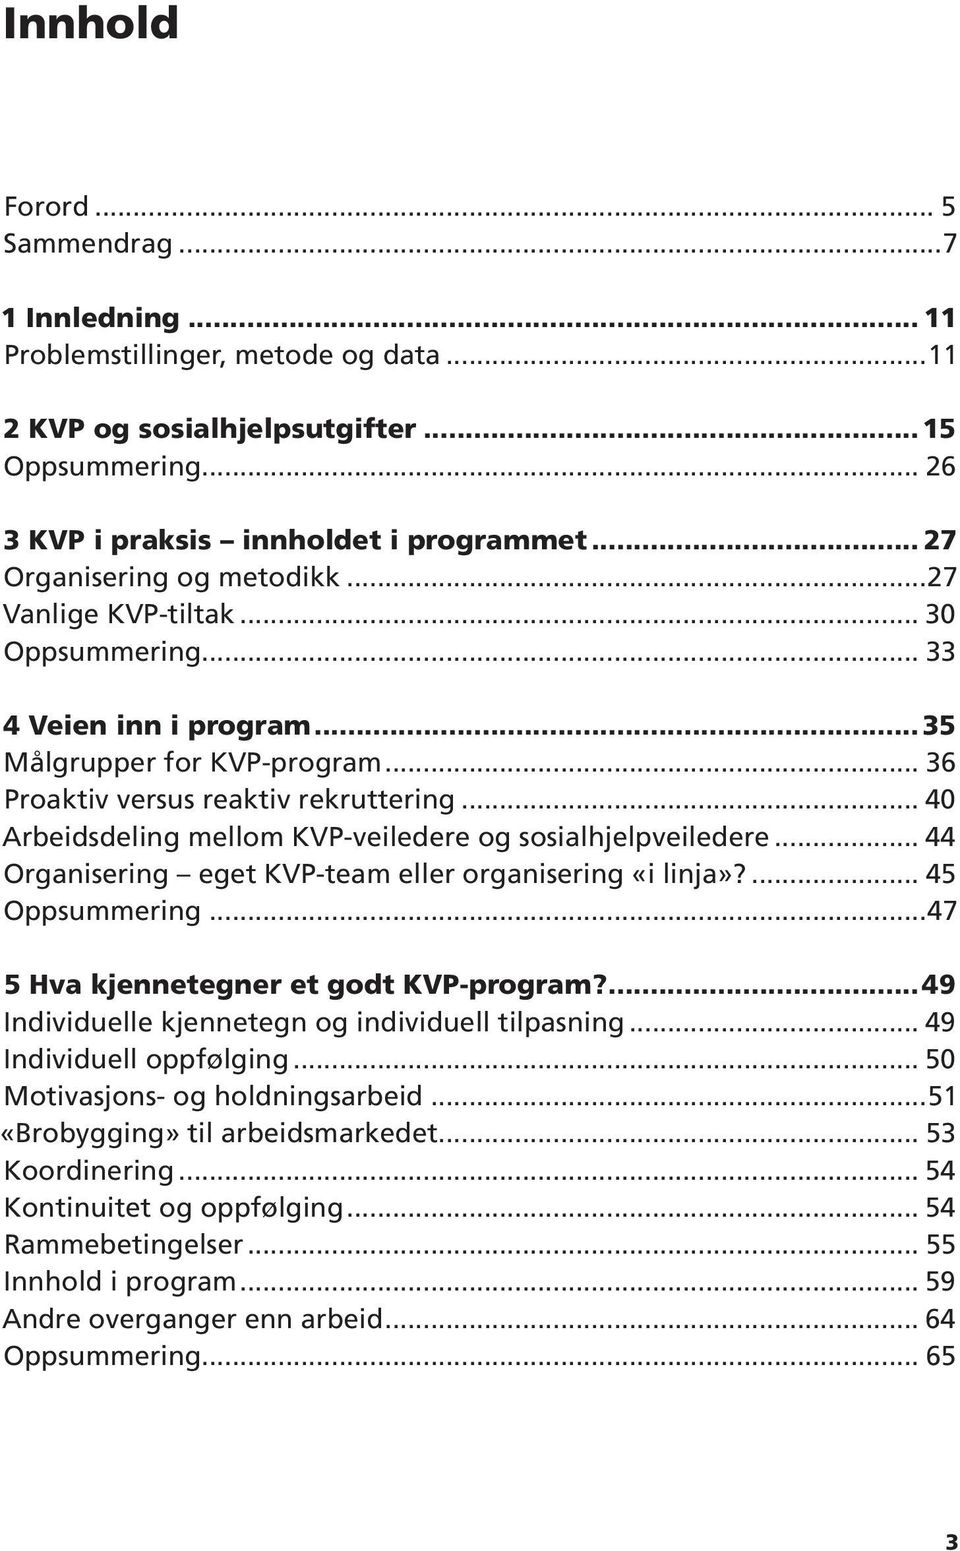 .. 40 Arbeidsdeling mellom KVP-veiledere og sosialhjelpveiledere... 44 Organisering eget KVP-team eller organisering «i linja»?... 45 Oppsummering...47 5 Hva kjennetegner et godt KVP-program?